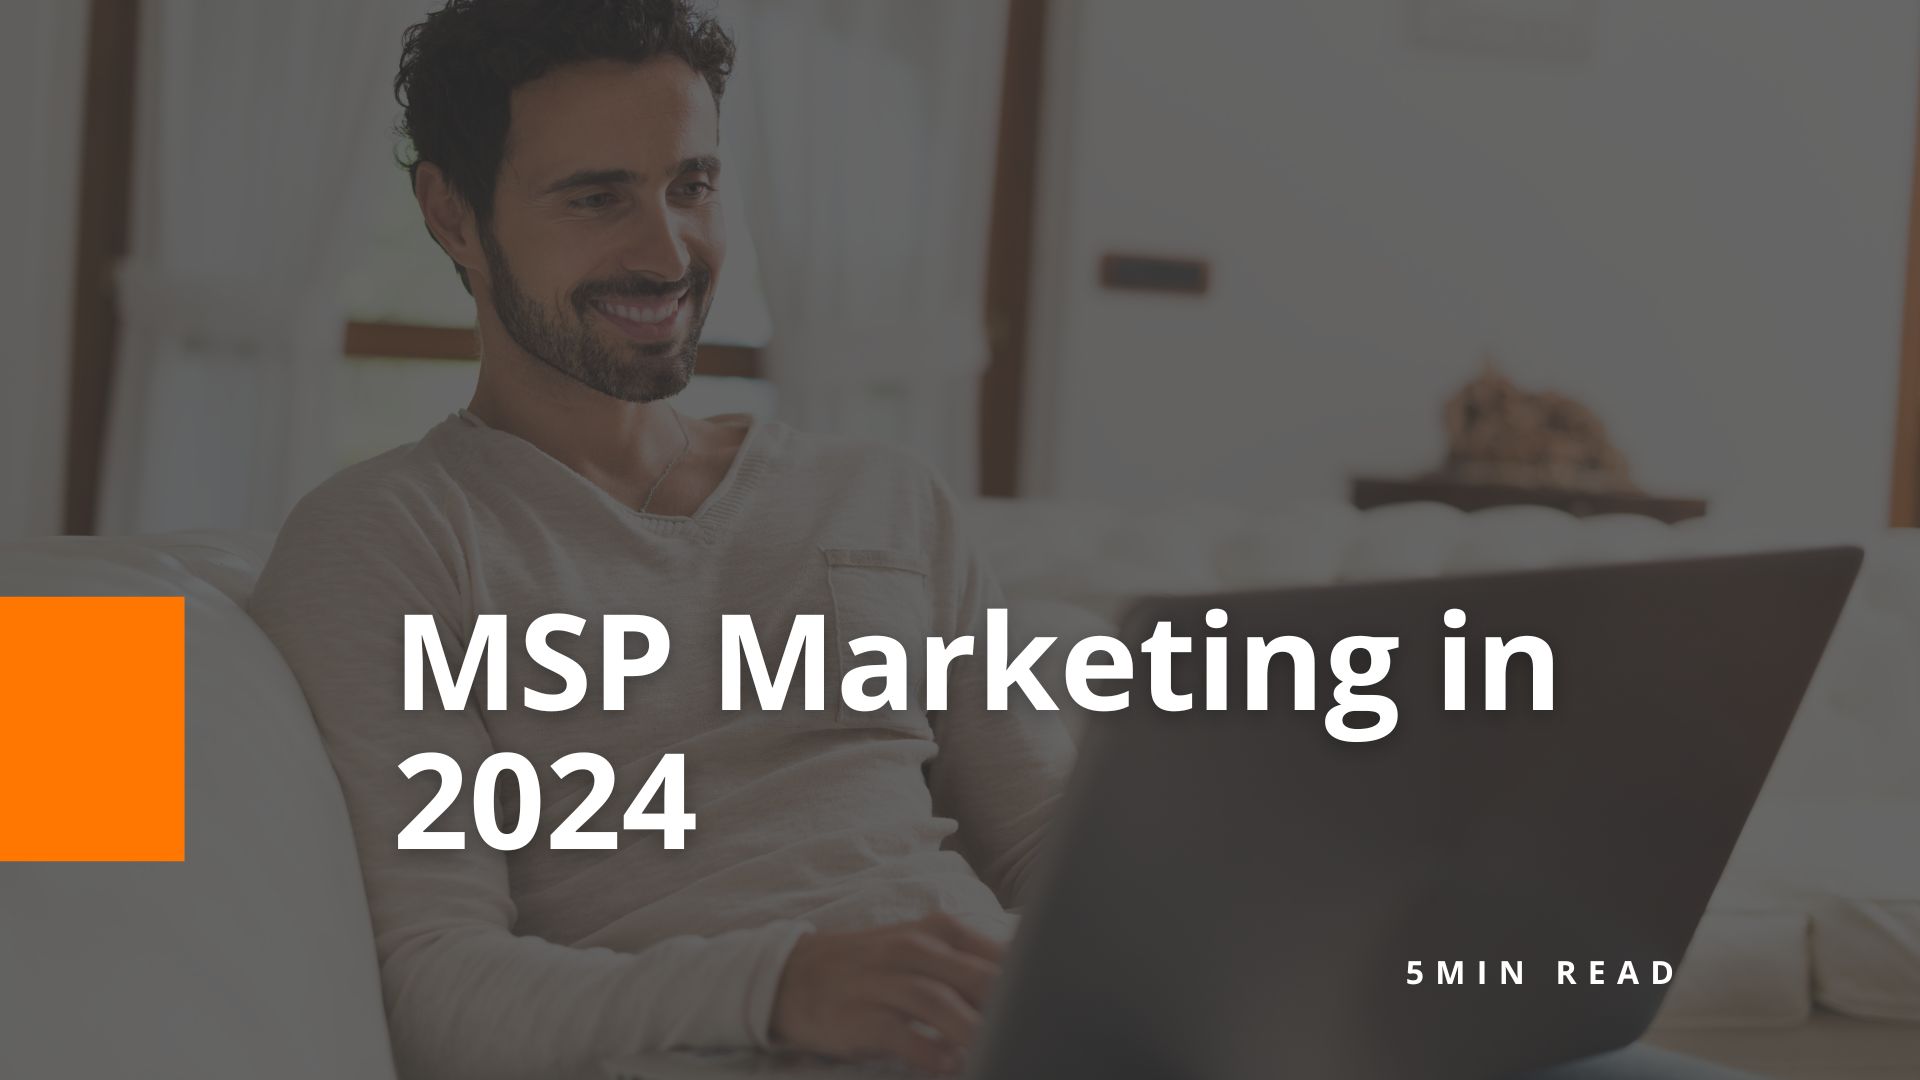 MSP Marketing in 2024 - BOM